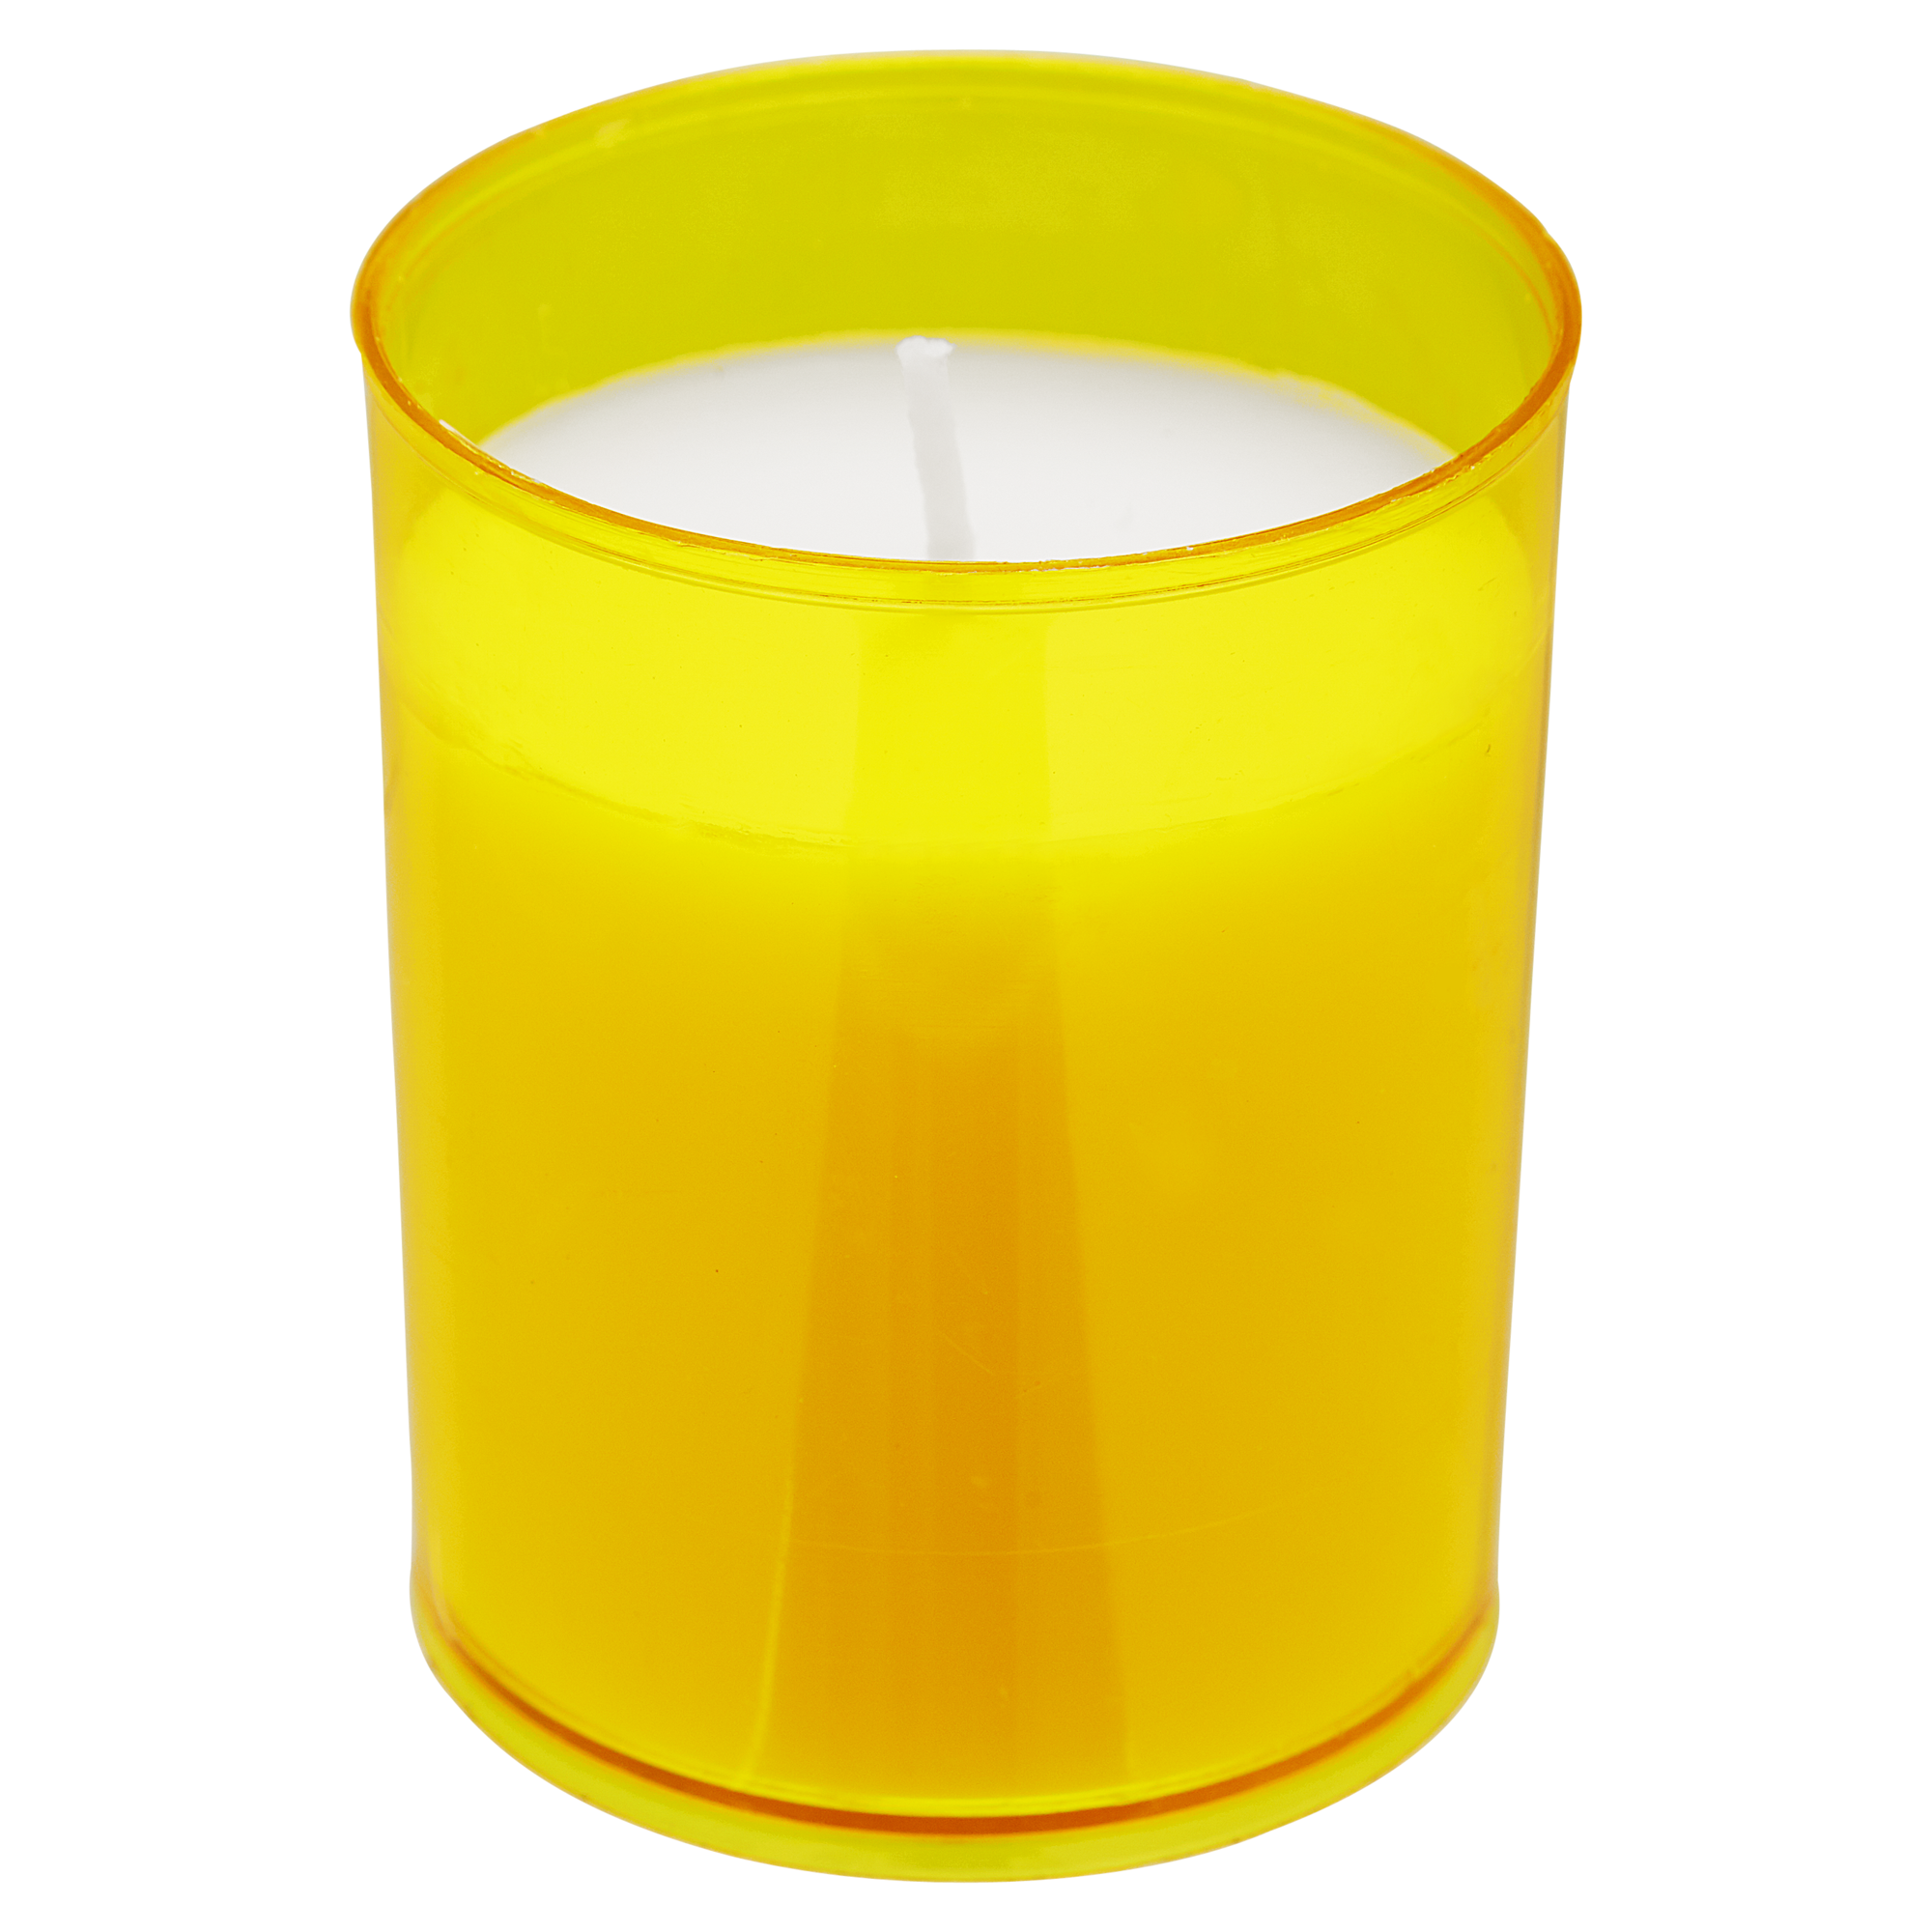 Kerzen für Gartenfackel gelb 11 cm 3 Stück + product picture